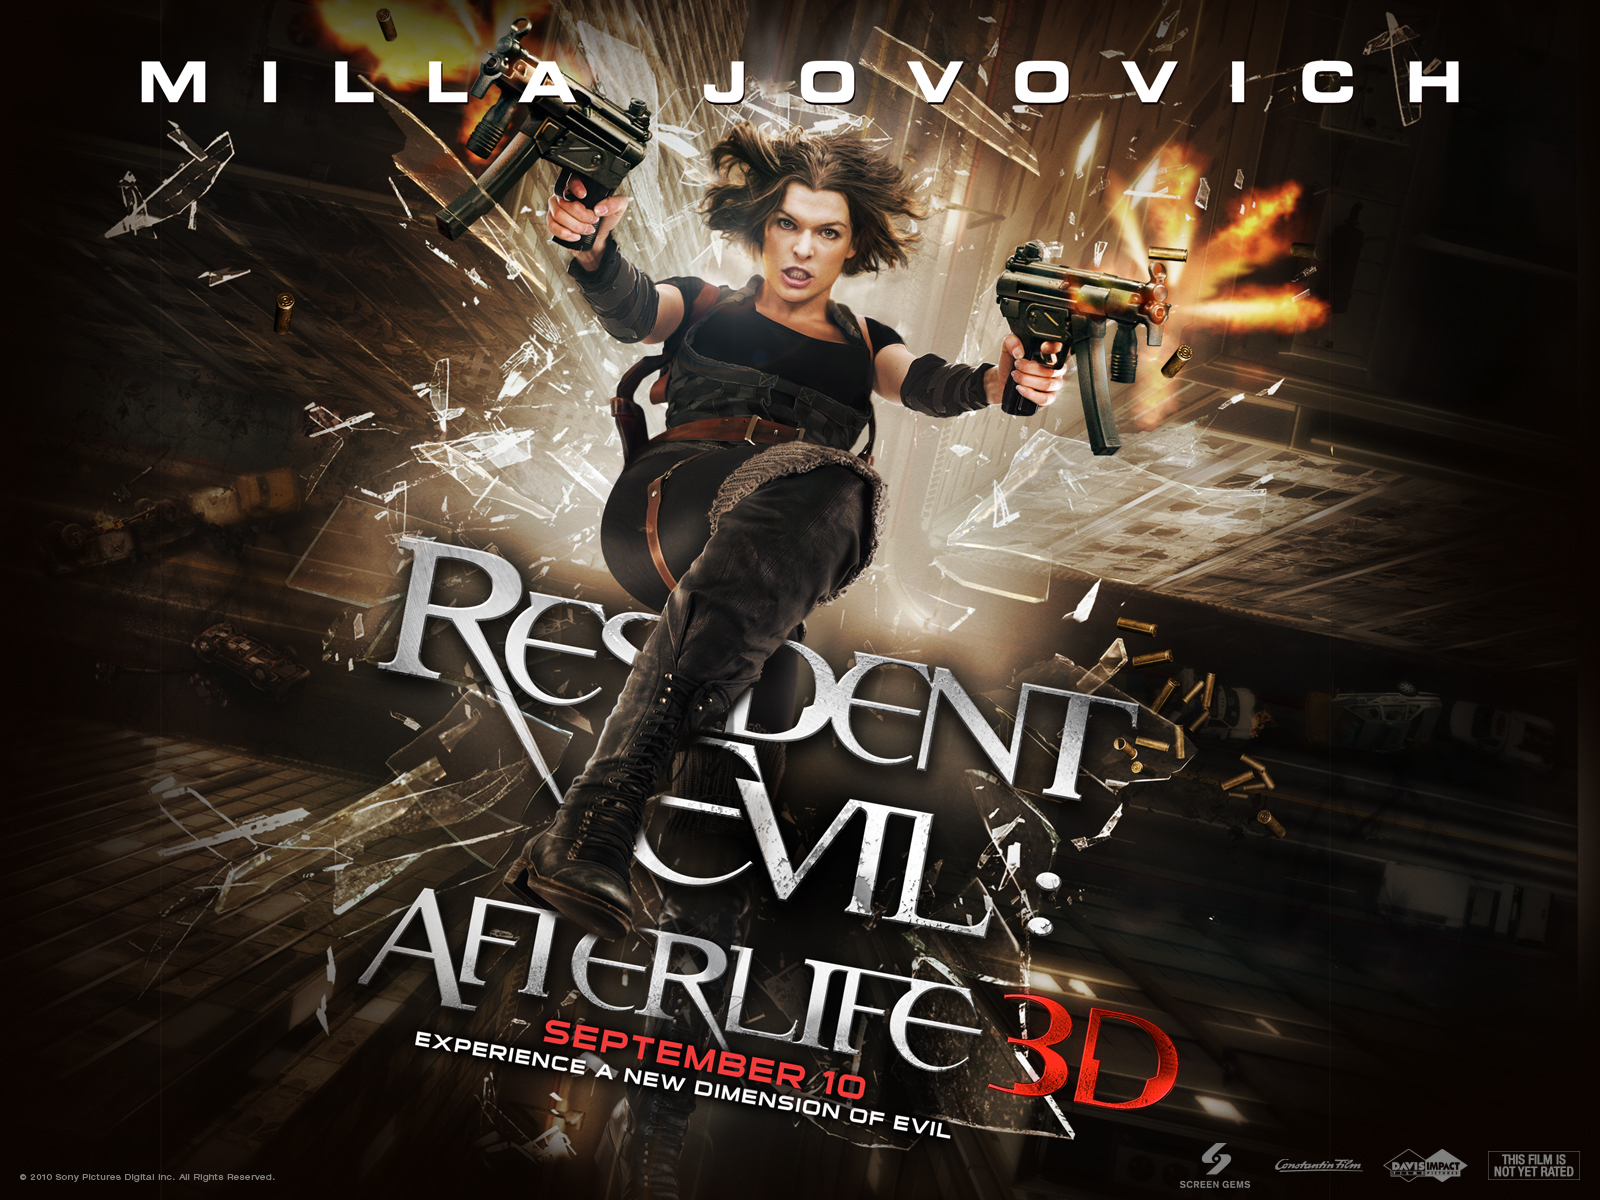 Resident+evil+afterlife.jpg